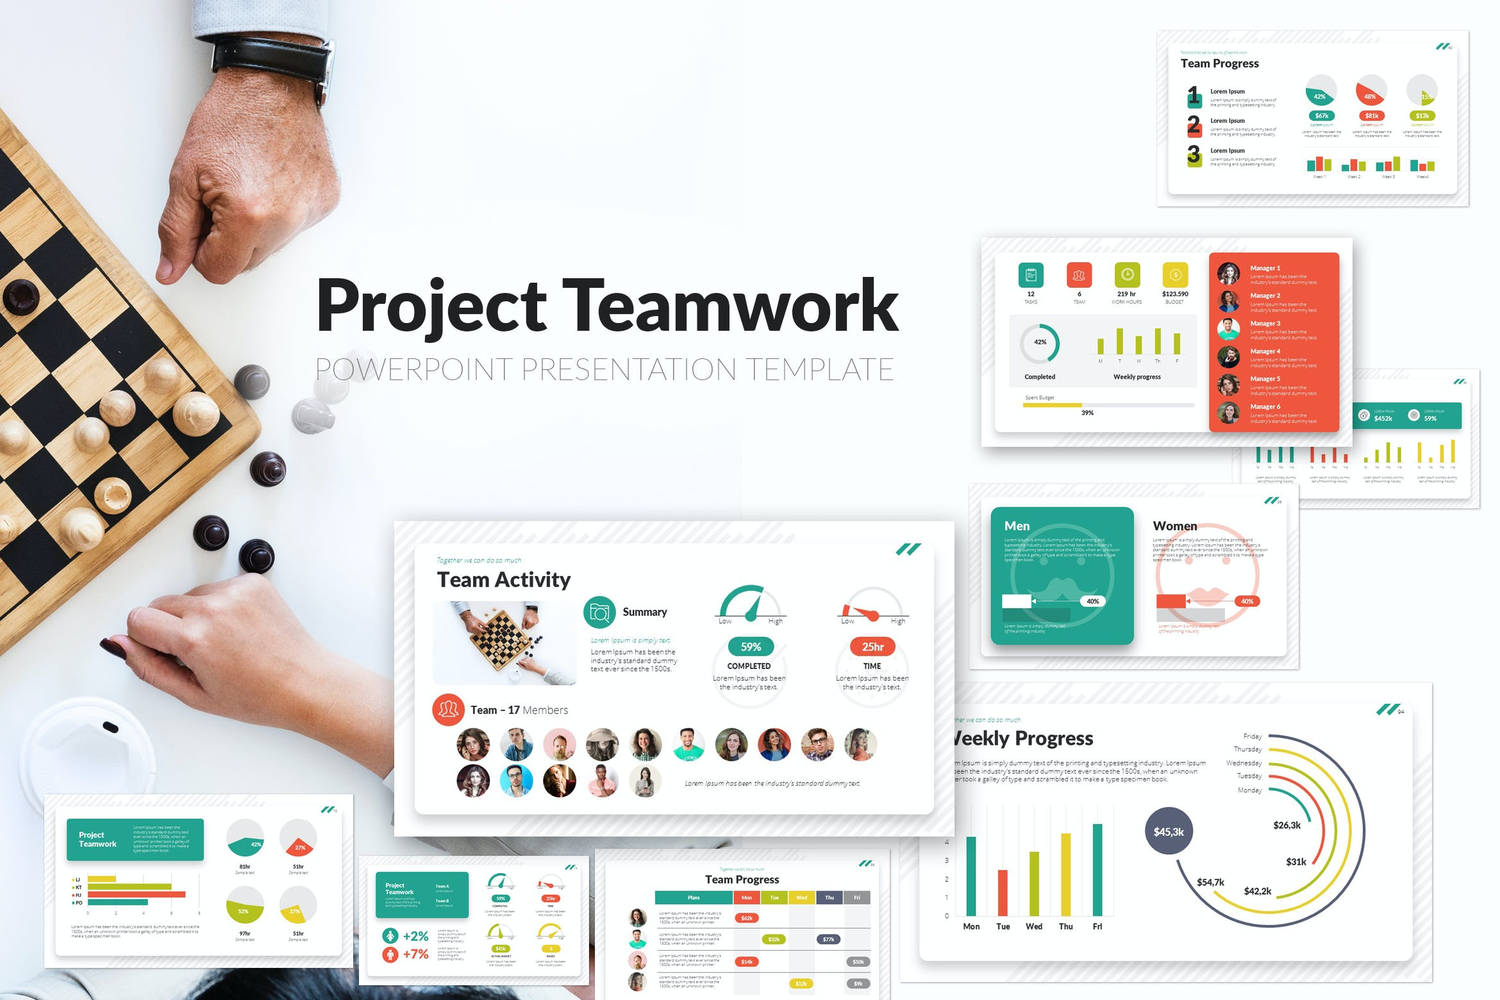 4420 商业合作团队培训数据演示信息图表PPT模板 Project Teamwork PowerPoint Presentation Template@GOOODME.COM